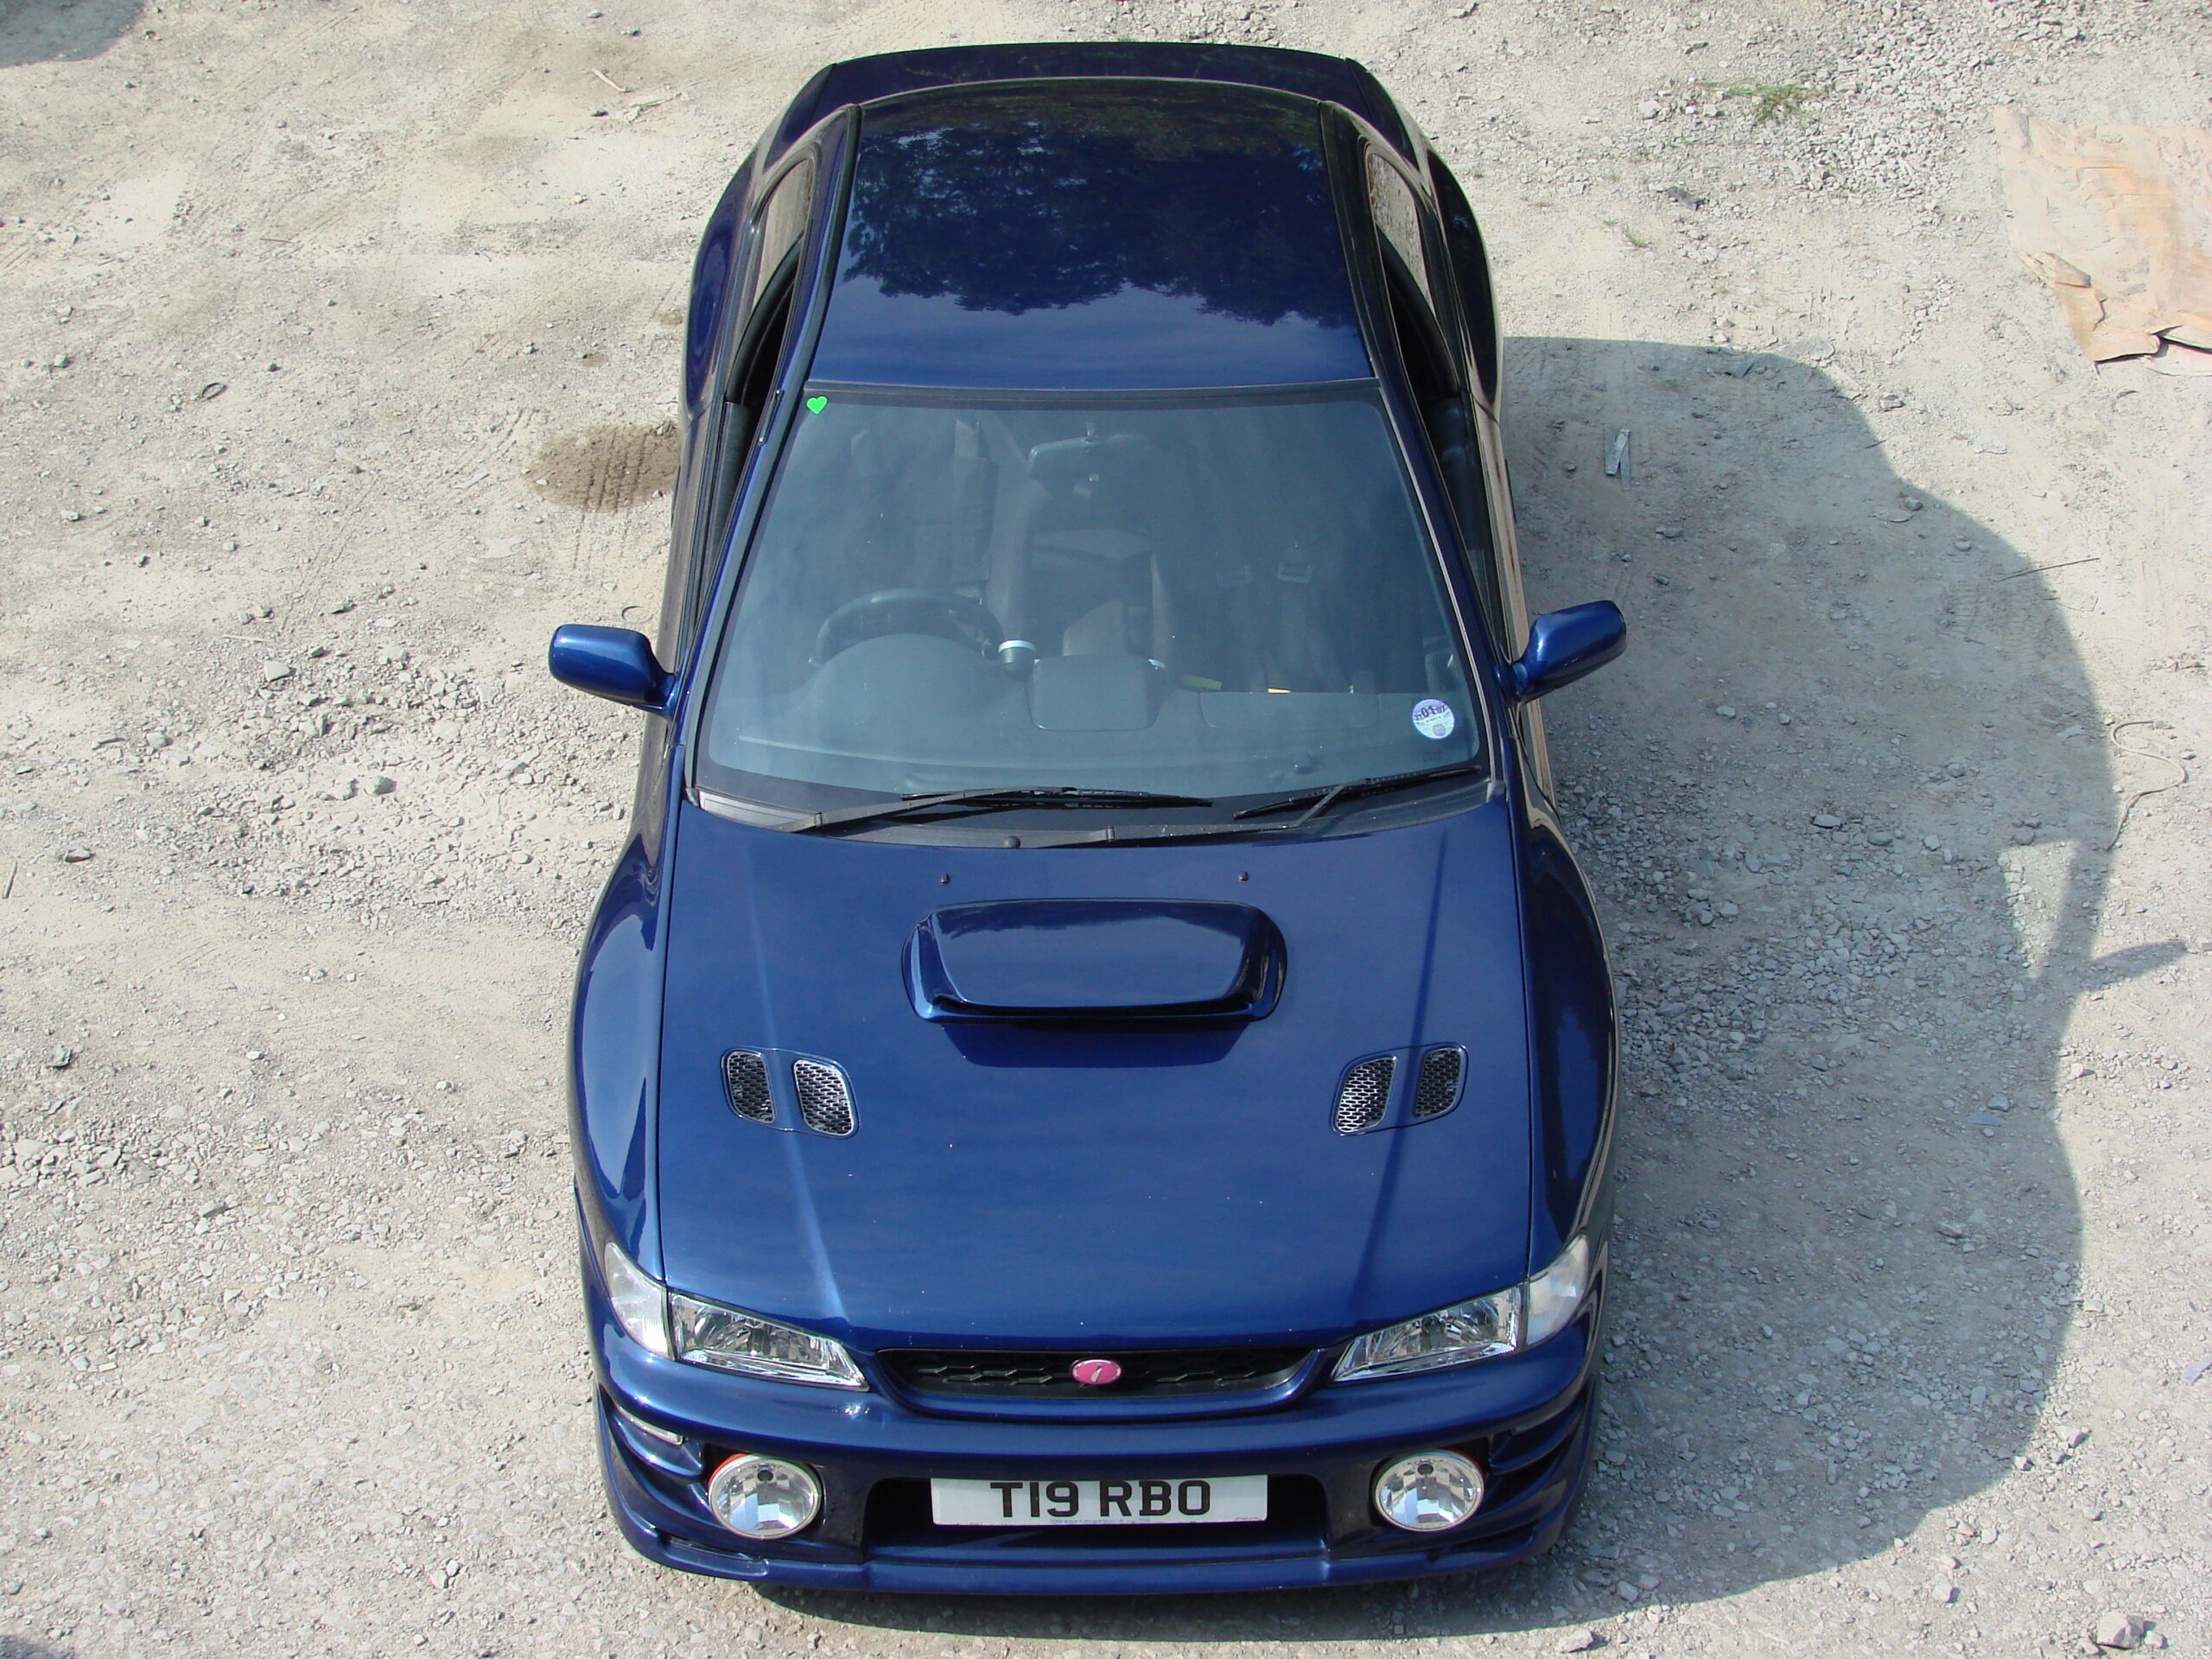 Subaru Impreza 22B STI Style Wide Body Kit